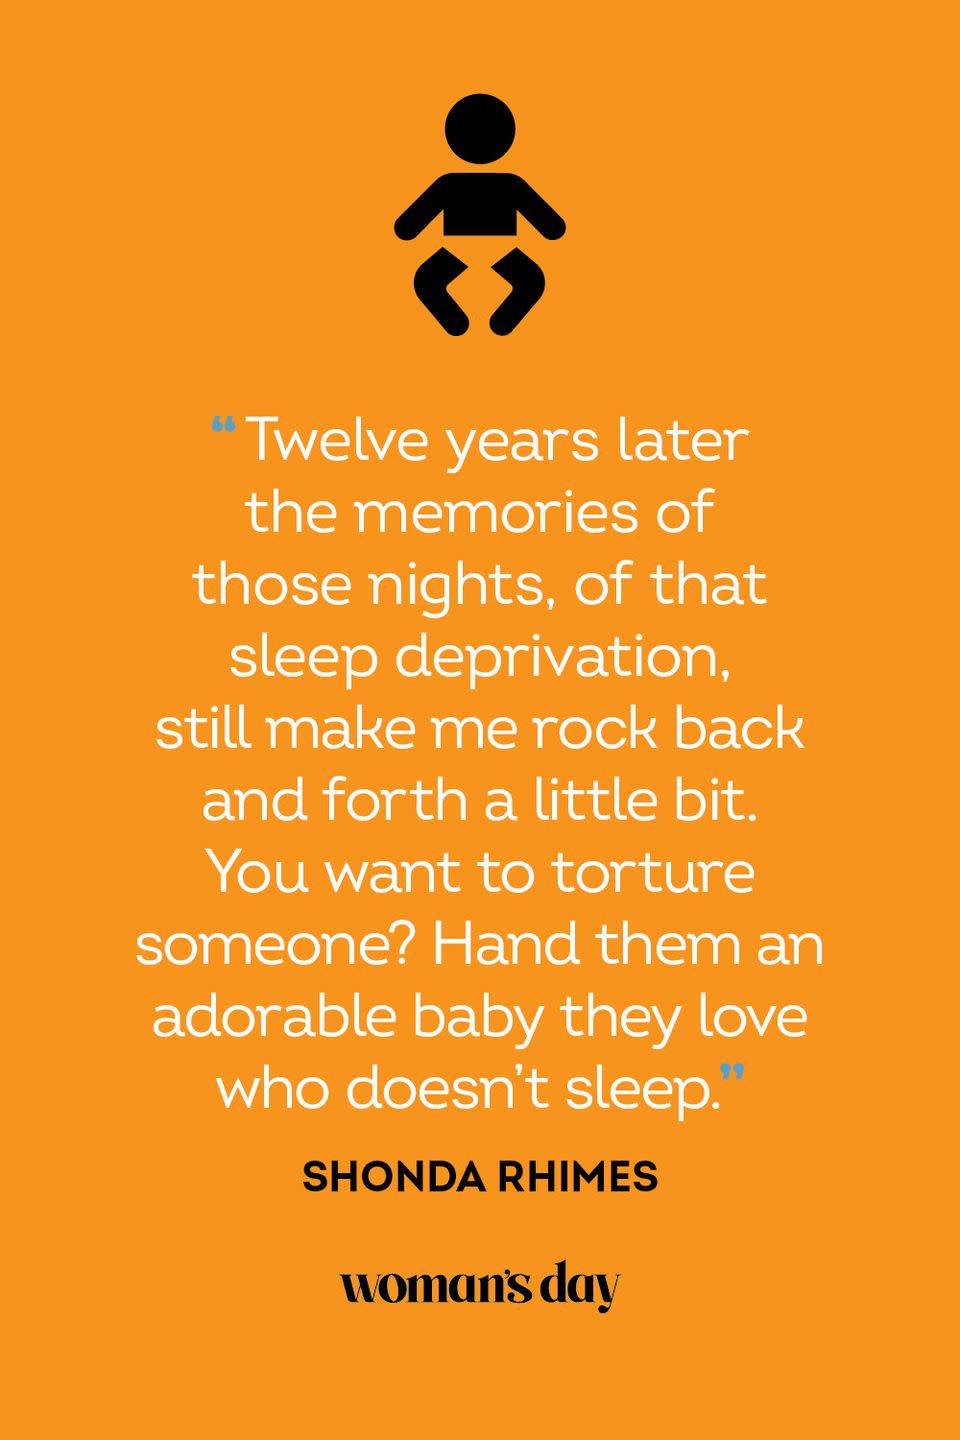 Shonda Rhimes